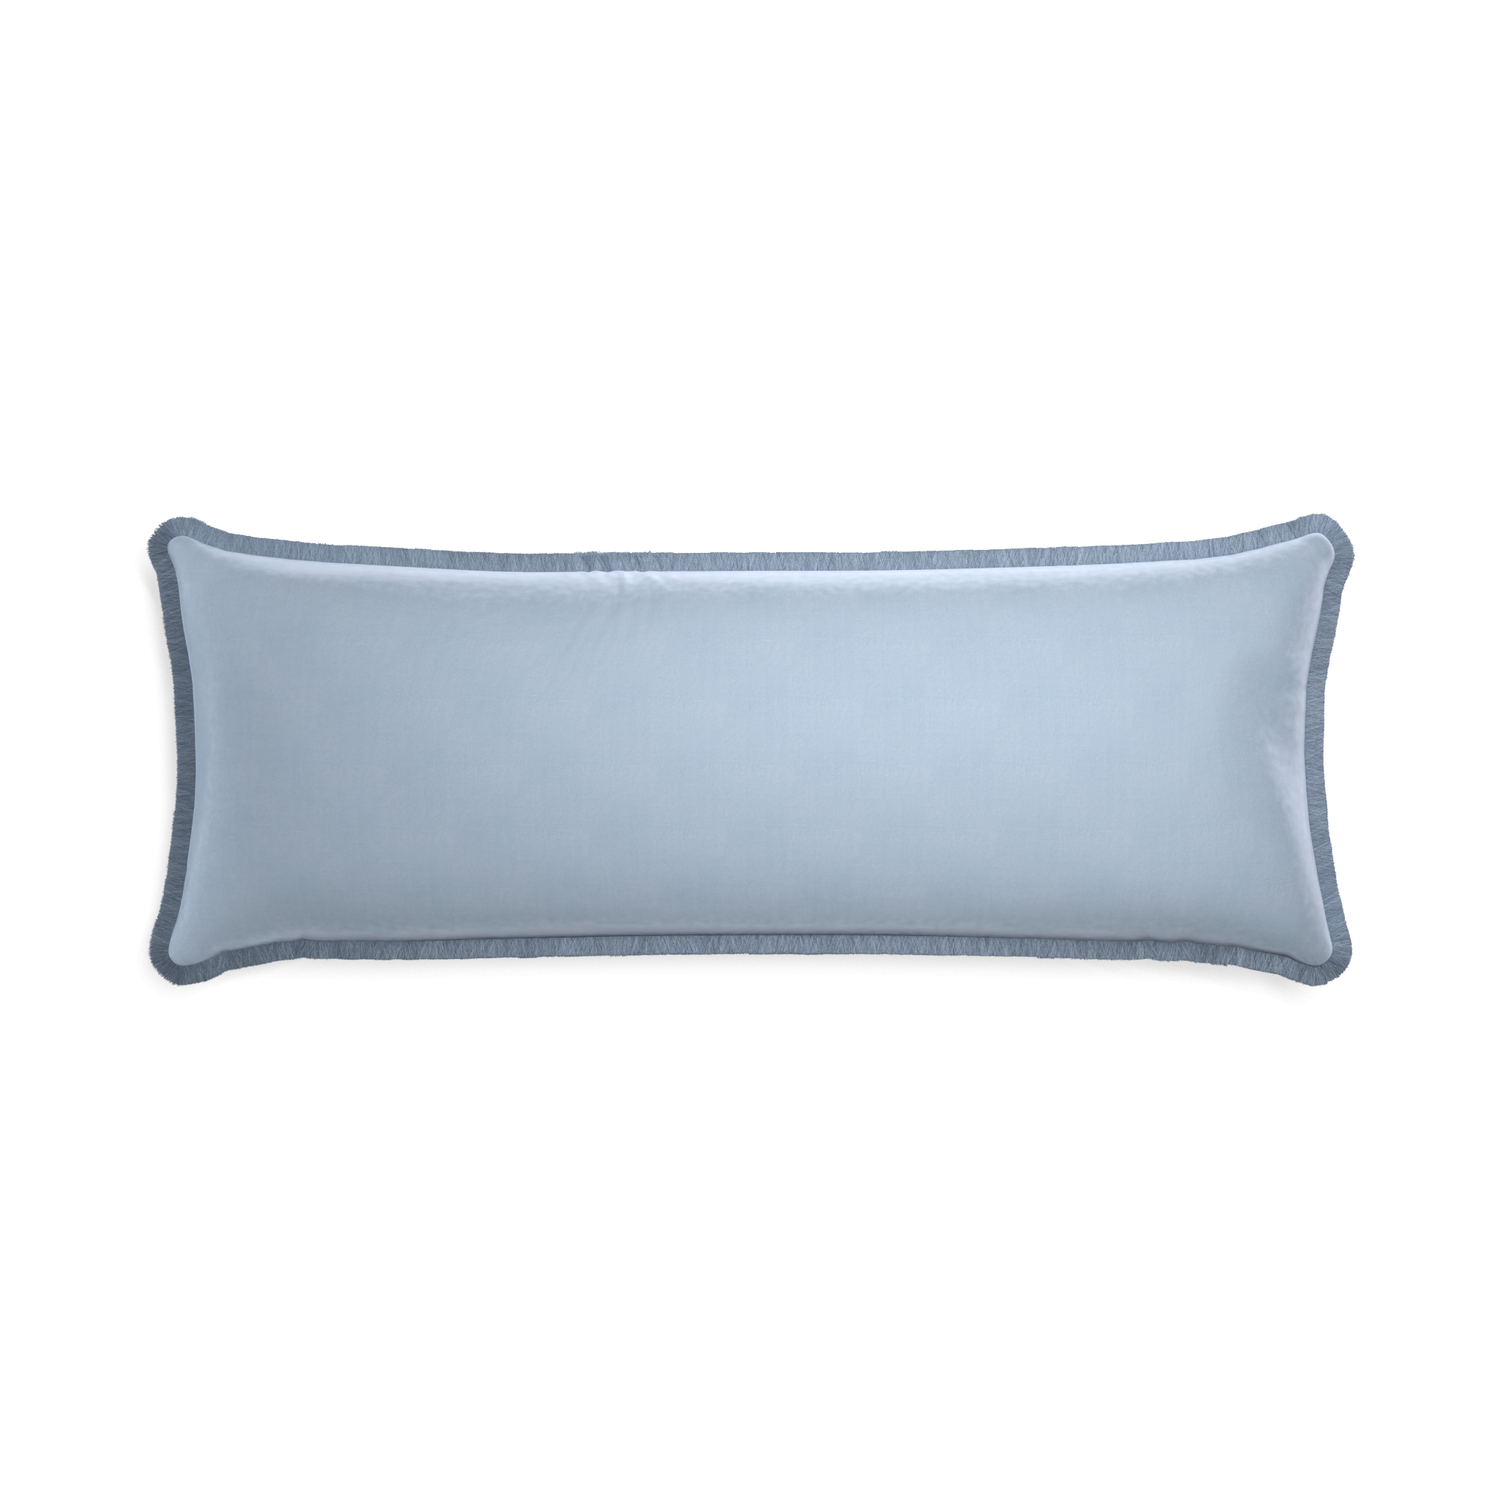 Xl-lumbar sky velvet custom pillow with sky fringe on white background